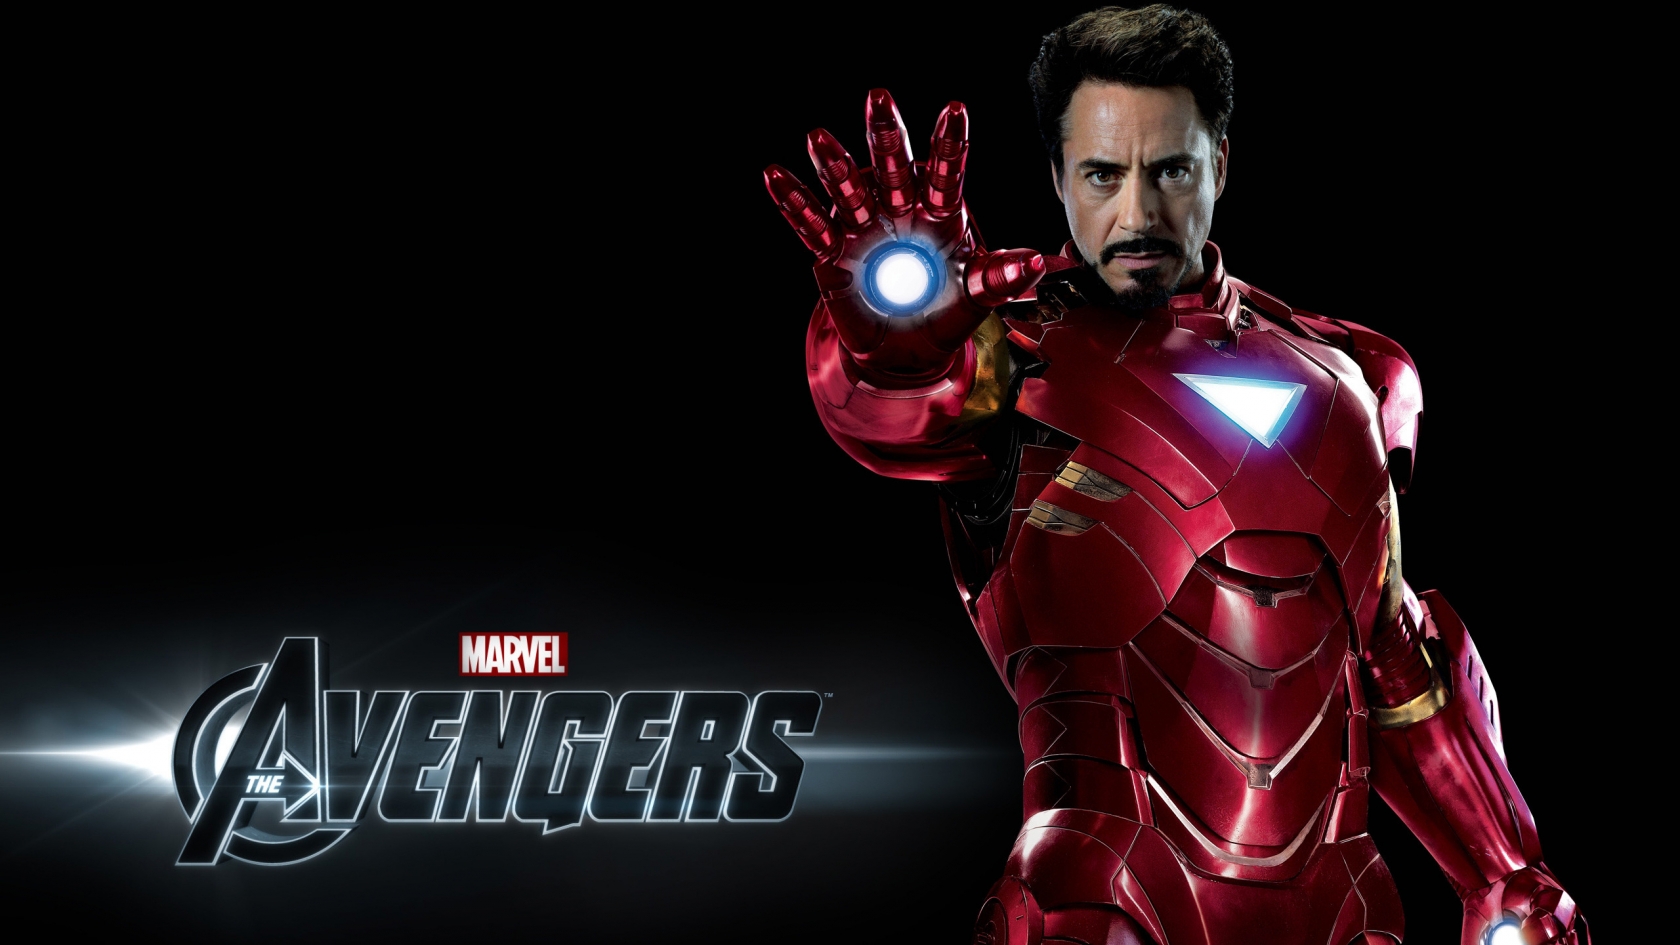 Avengers Iron Man for 1680 x 945 HDTV resolution